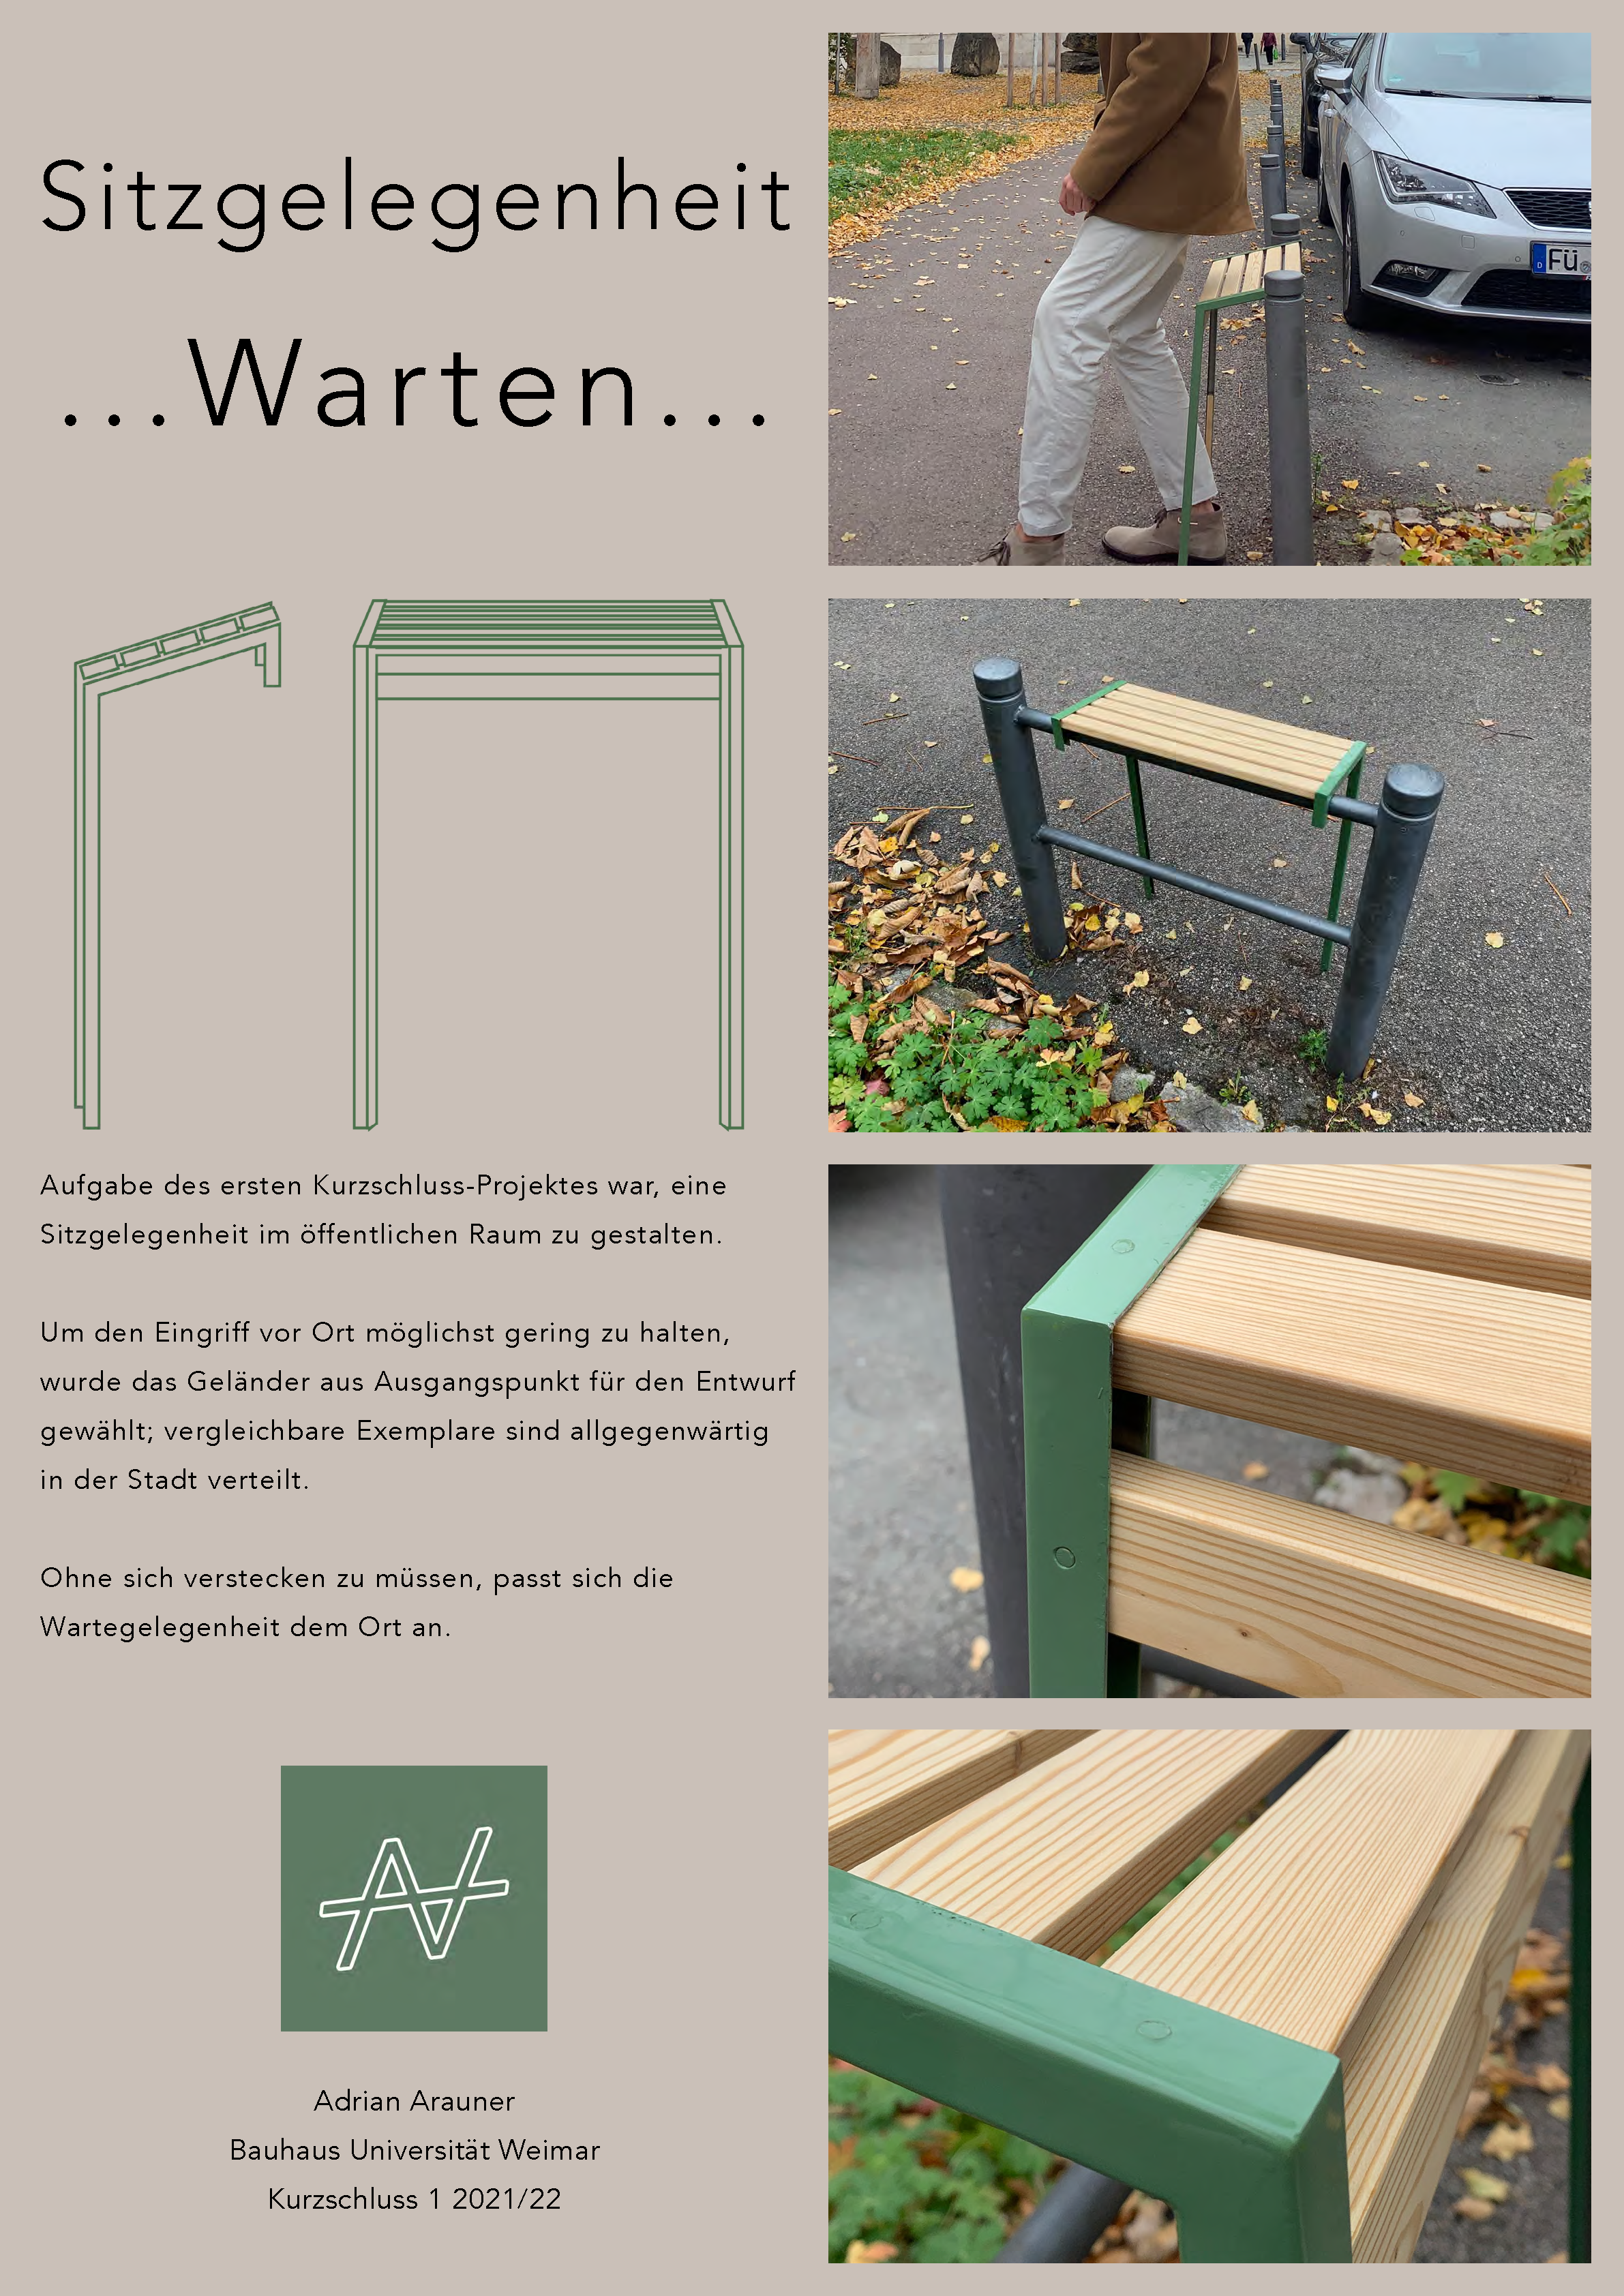 Plakat mit Grafiken/Illustrationen und Beschreibungstext für eine Sitzgelegenheit an einem spezifischen Ort in Weimar